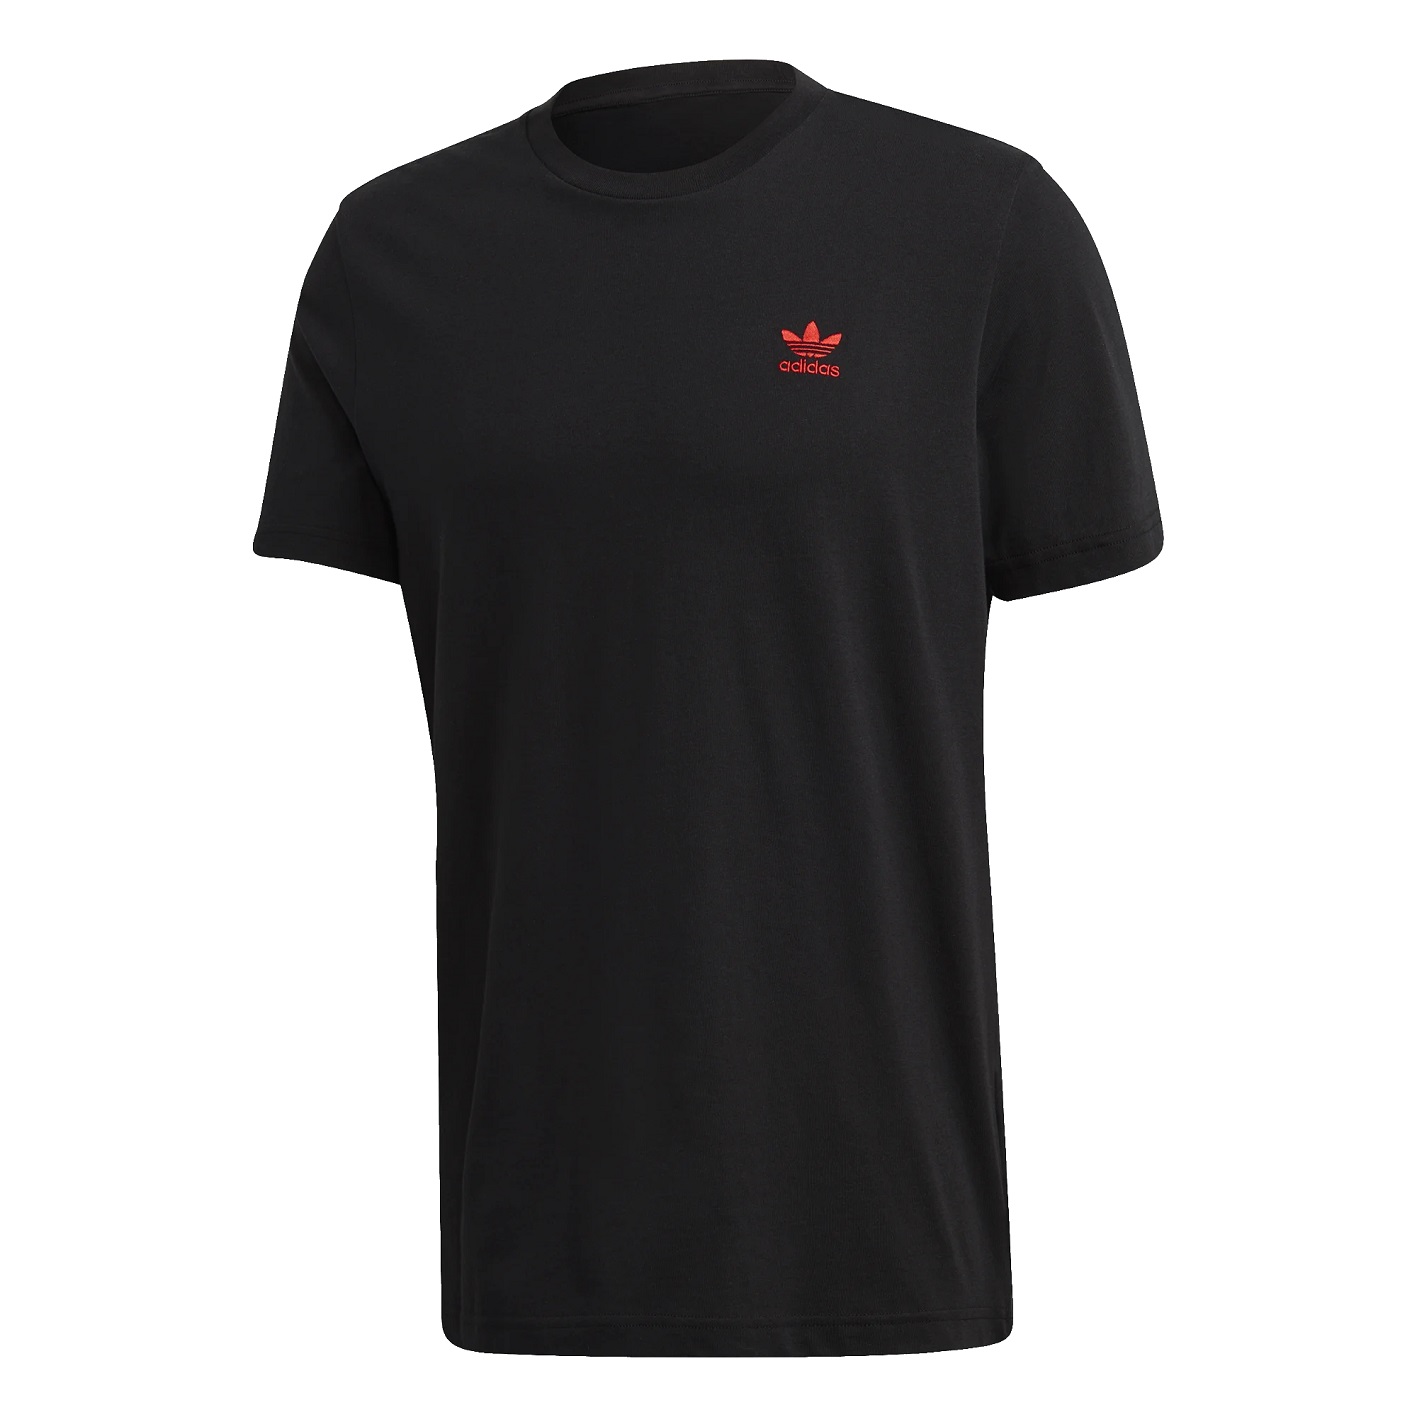 ☆ Adidas Essential T-Shirt schwarz/rot - hier bestellen!